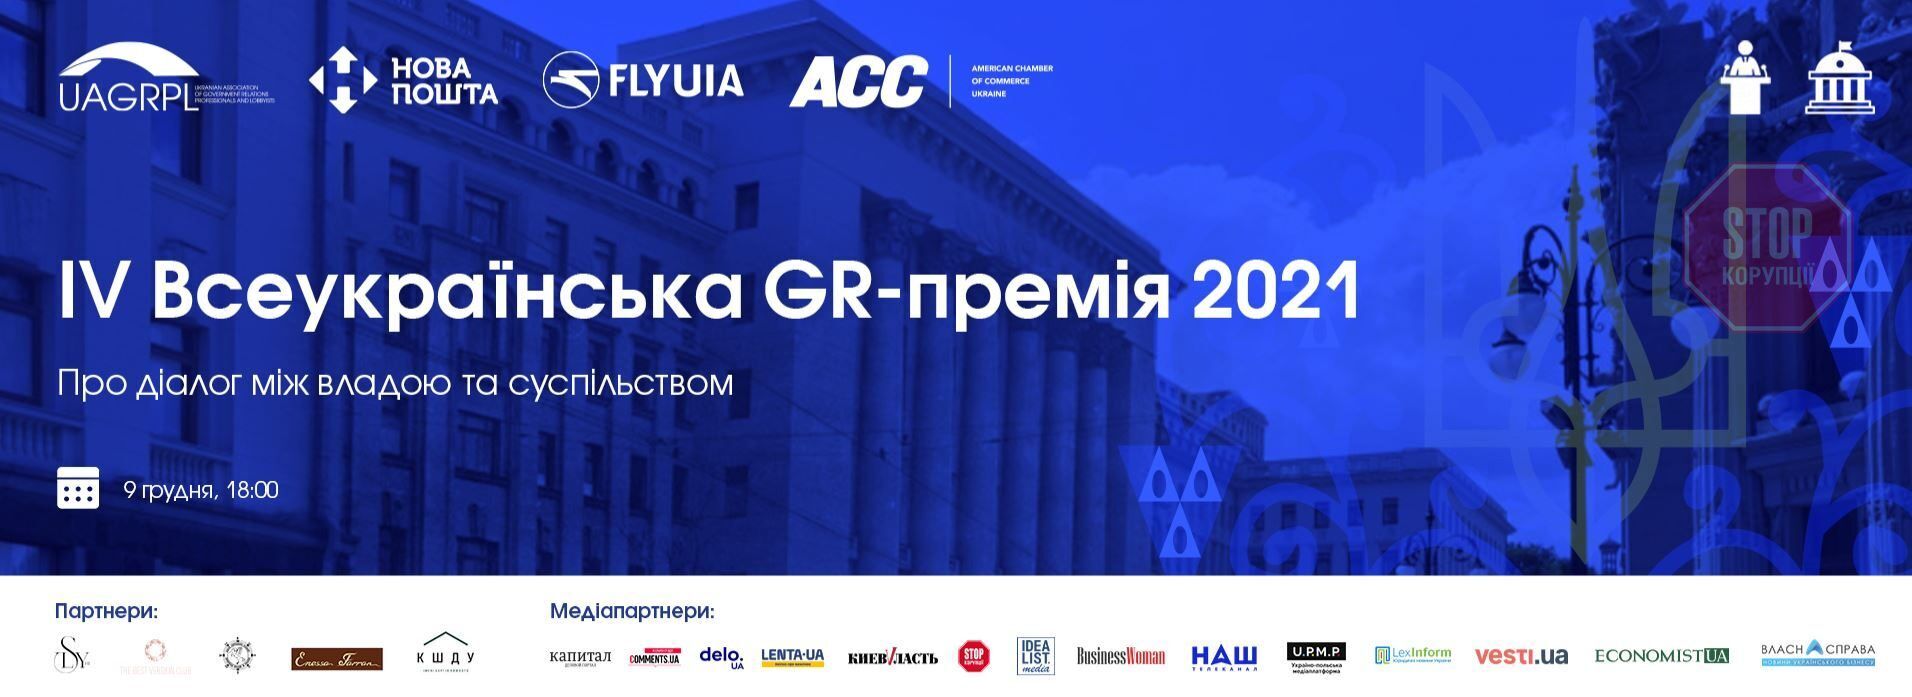  IV Всеукраїнська GR-премія 2021